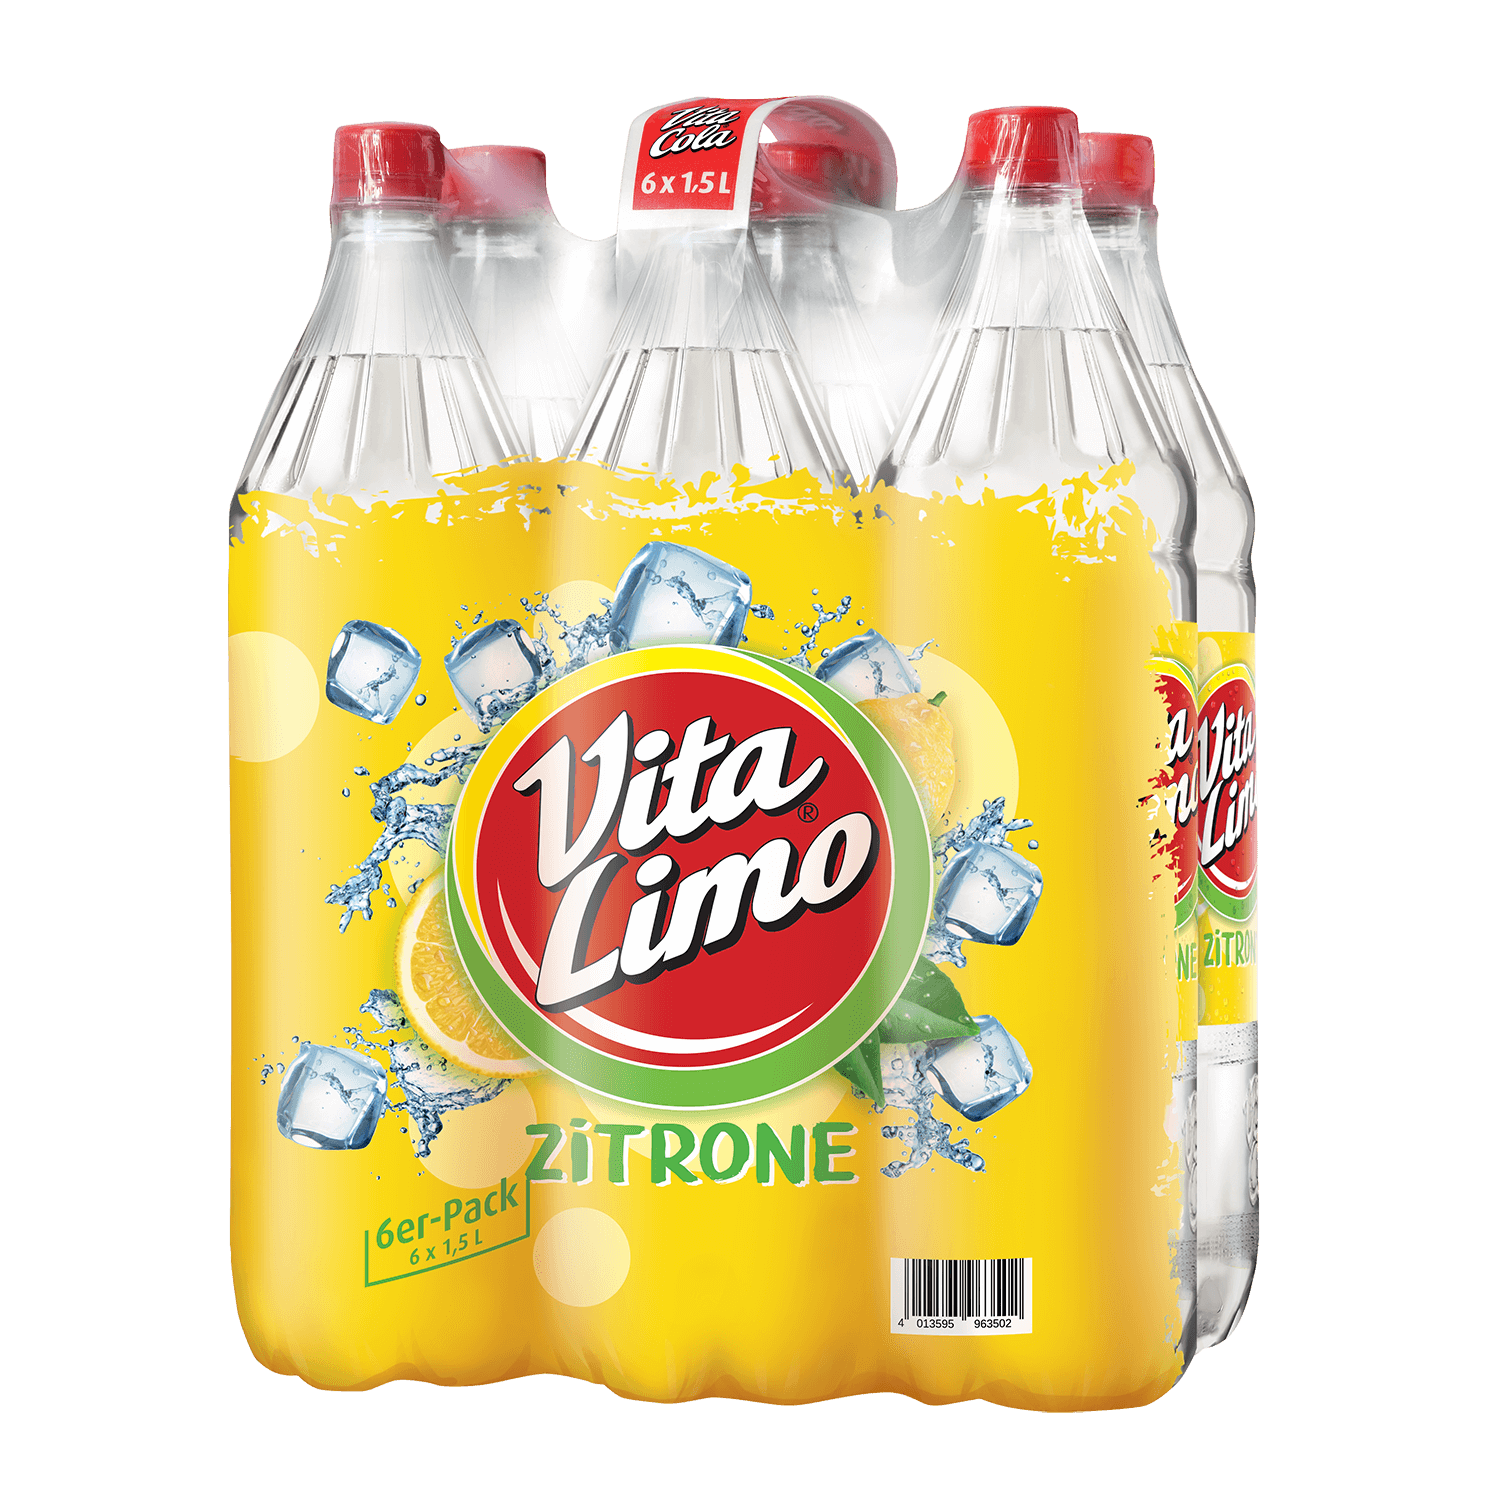 VITA LIMO Zitrone 6x 1,5 l PET-EINWEG-Flasche